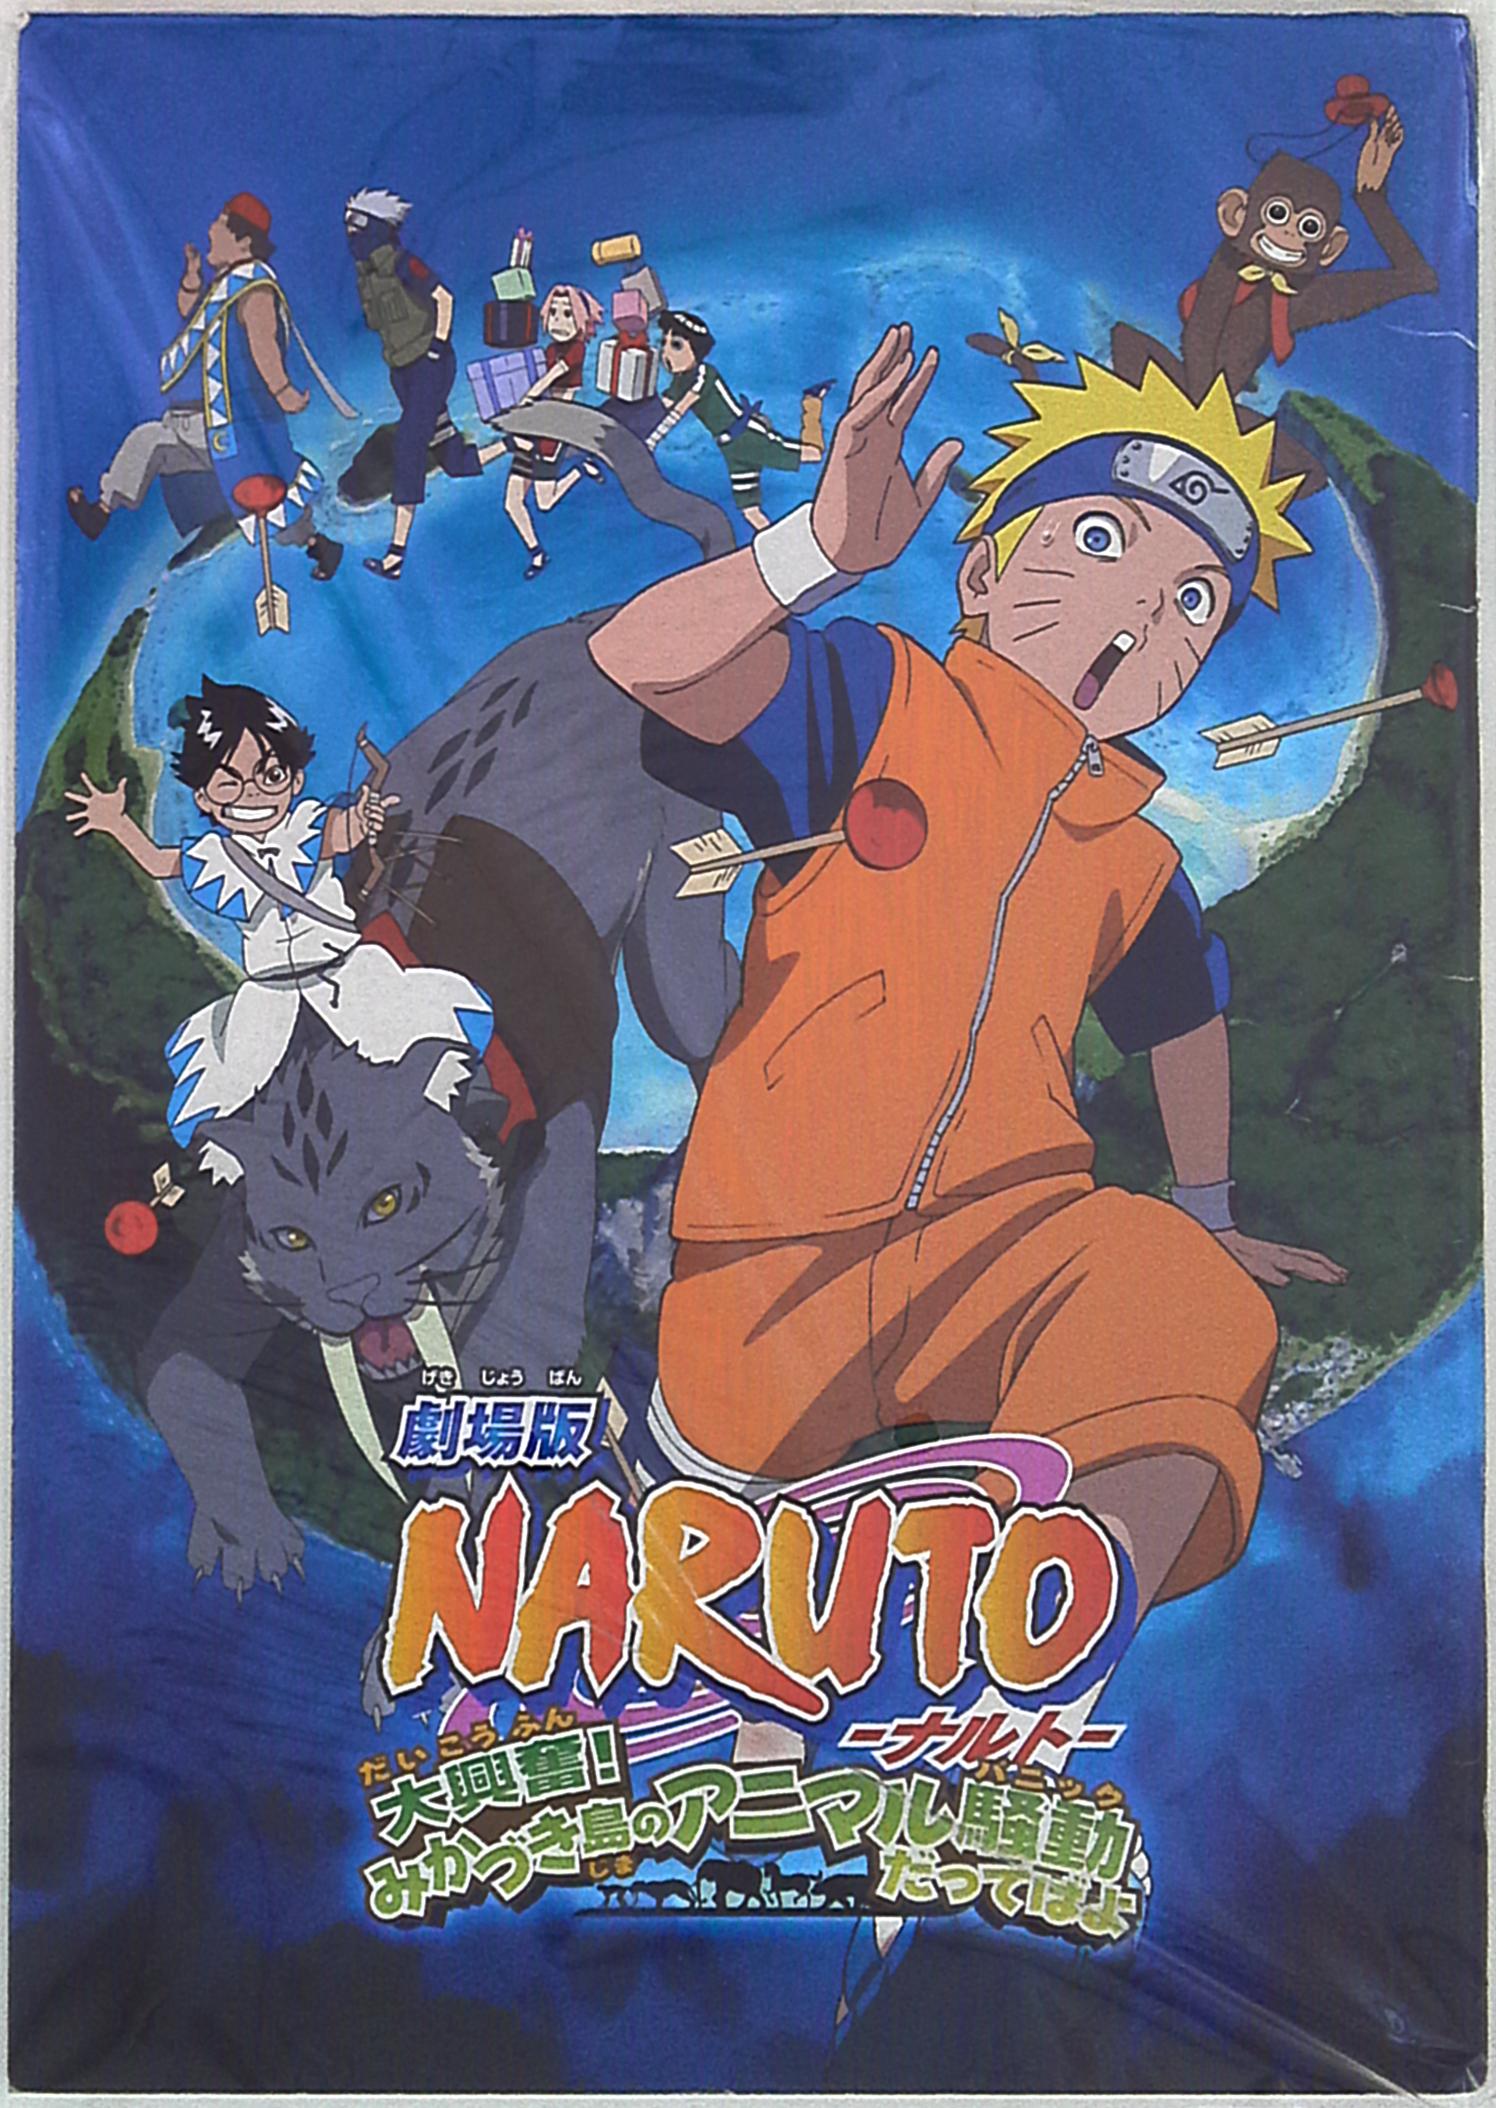 劇場版NARUTO-ナルト-大興奮!みかづき島のアニマル騒動だってばよ(2006)